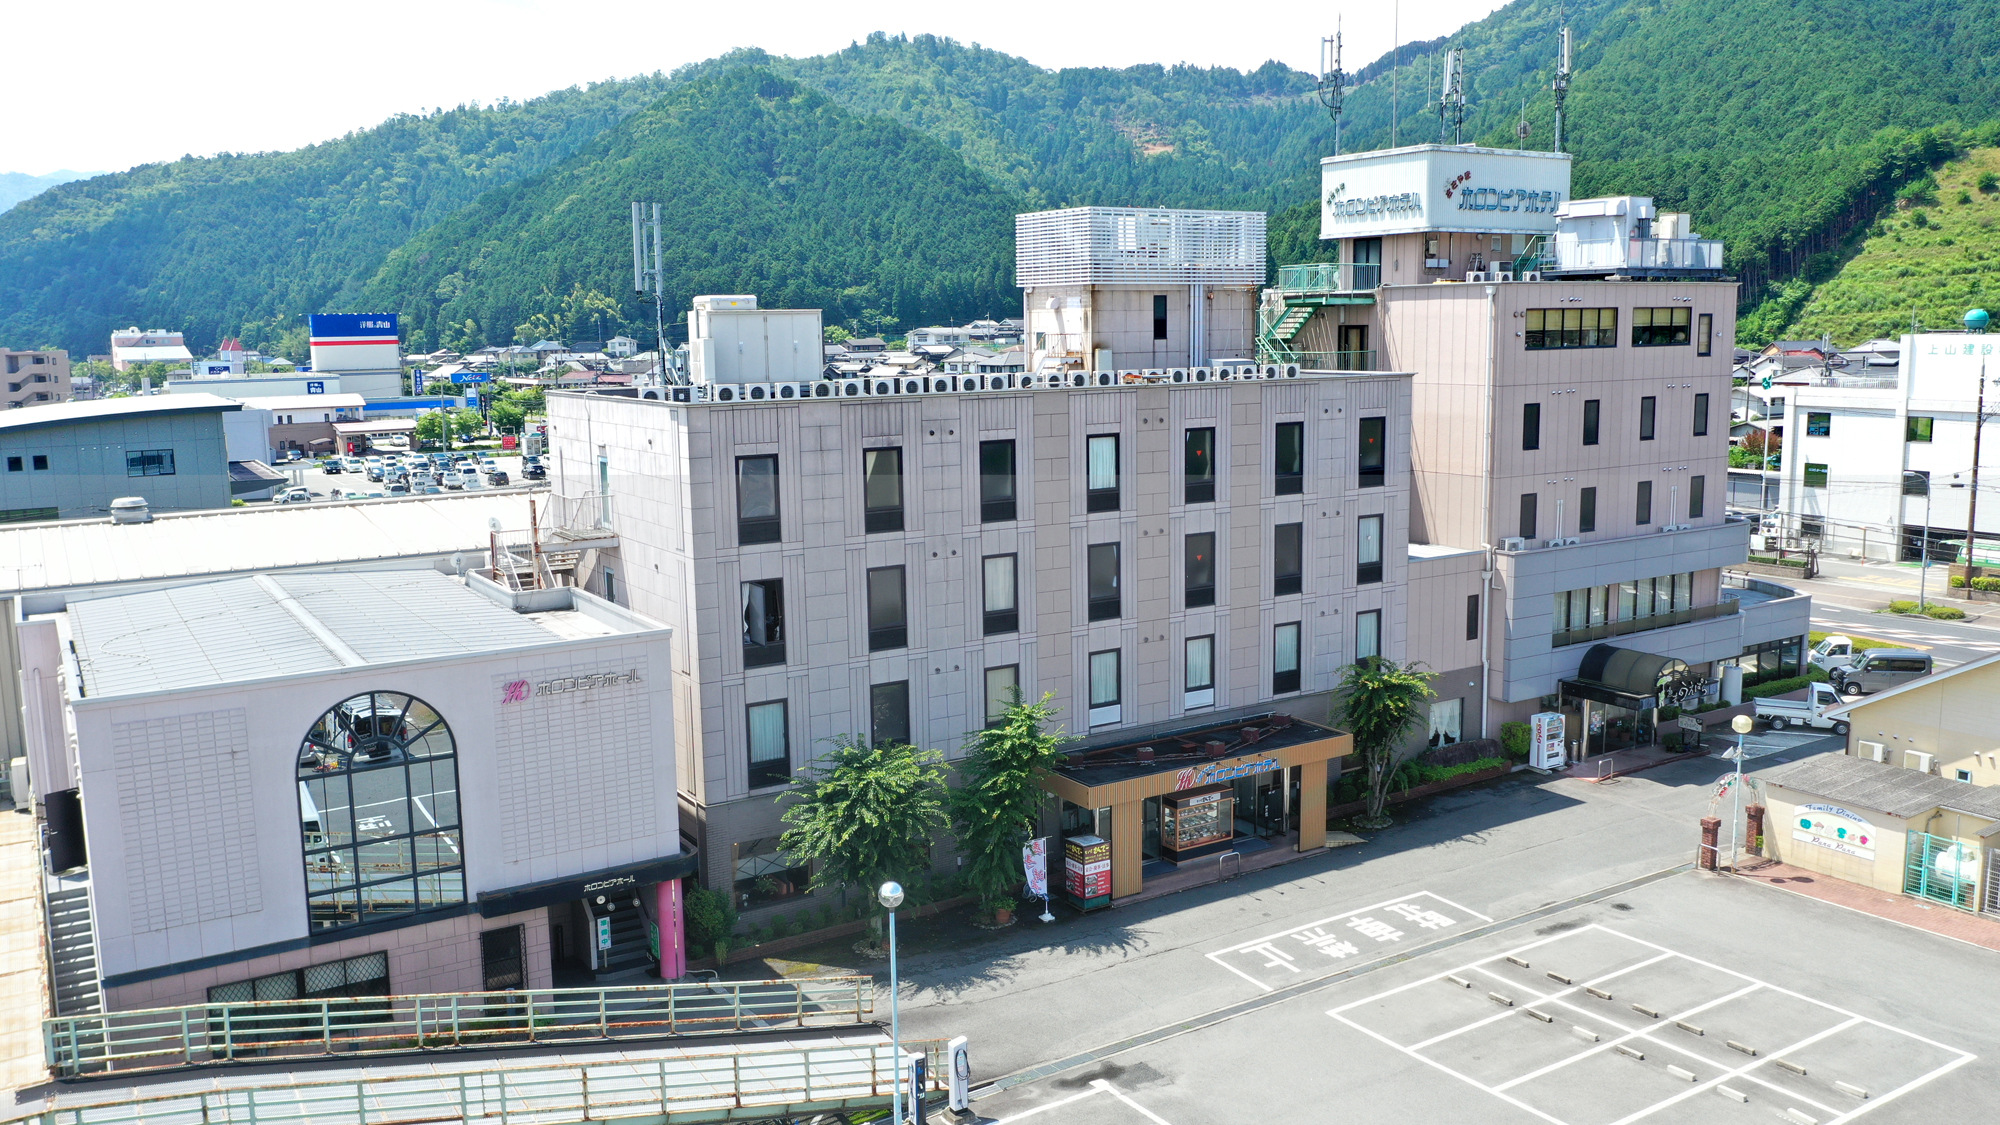 【兵庫県】丹波篠山市で出張におすすめのホテル